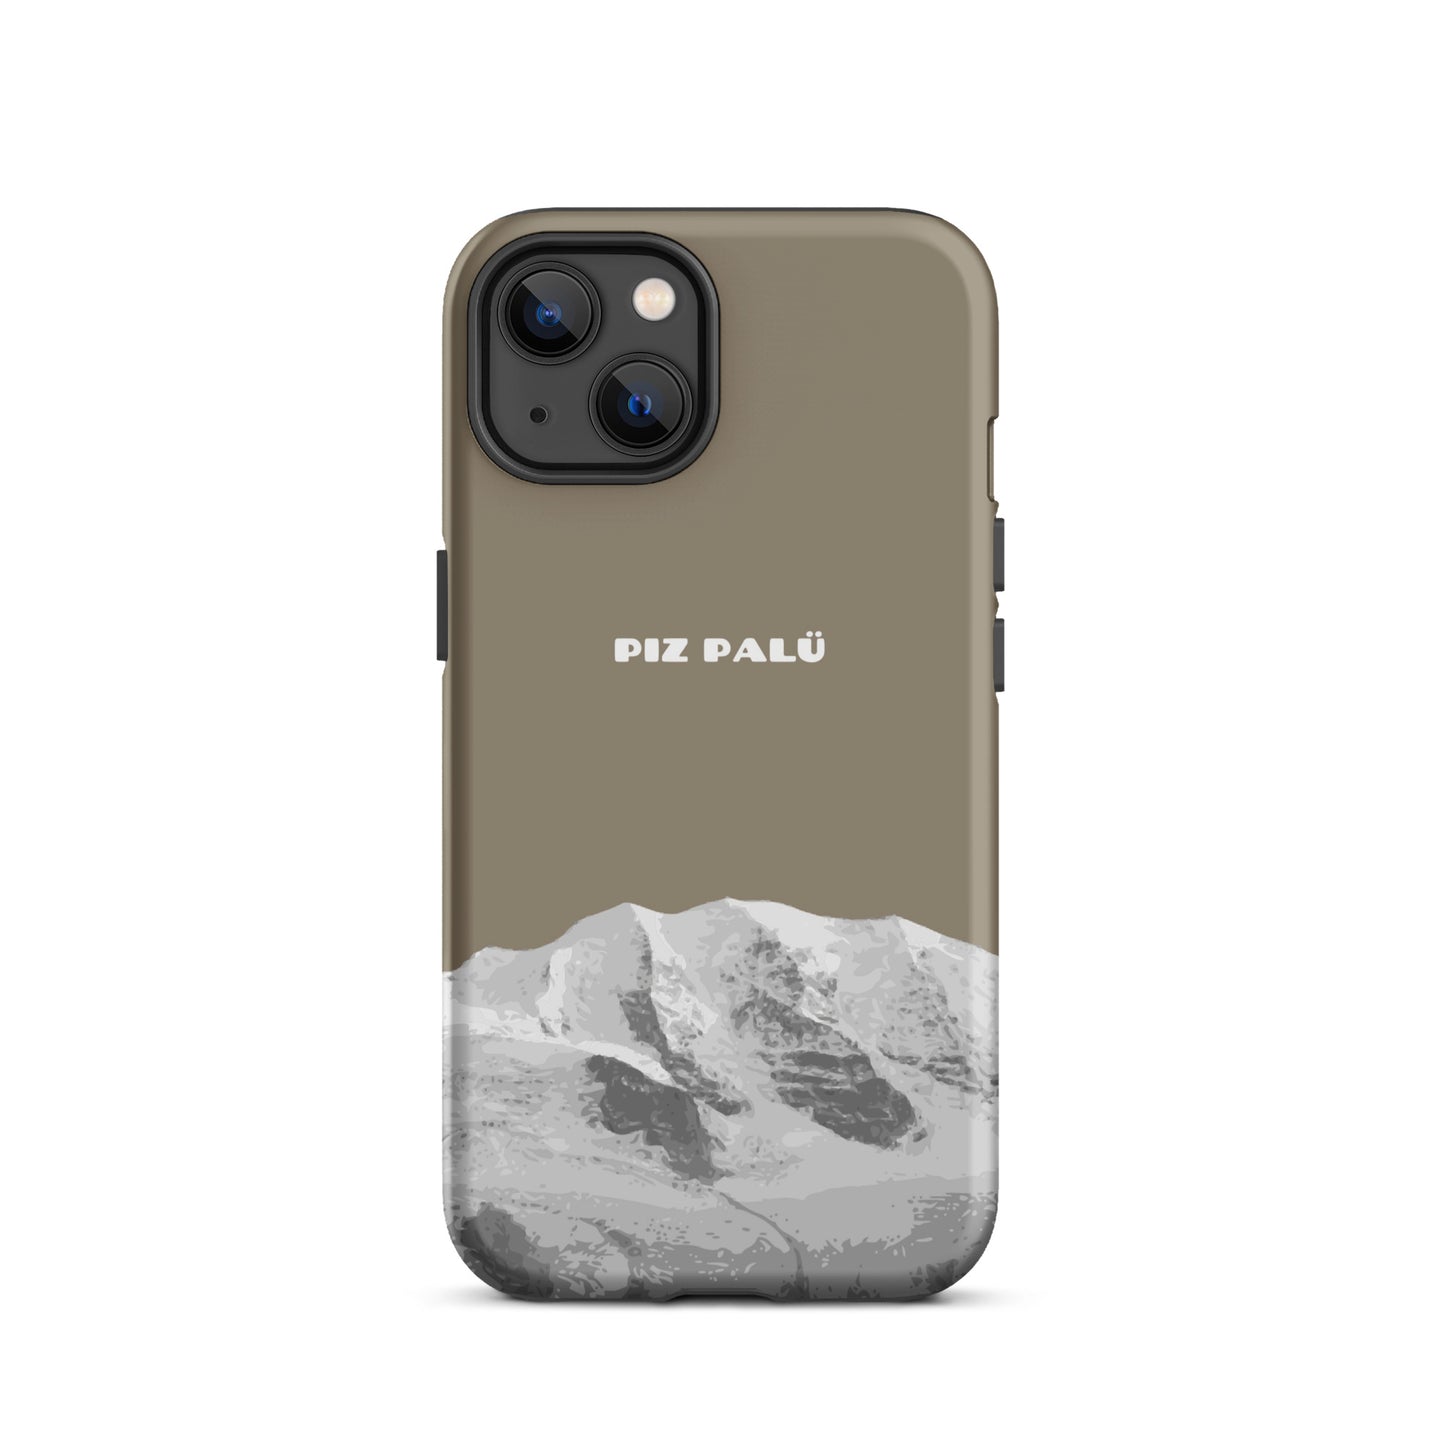 Hülle für das iPhone 13 von Apple in der Farbe Graubrau, dass den Piz Palü in Graubünden zeigt.